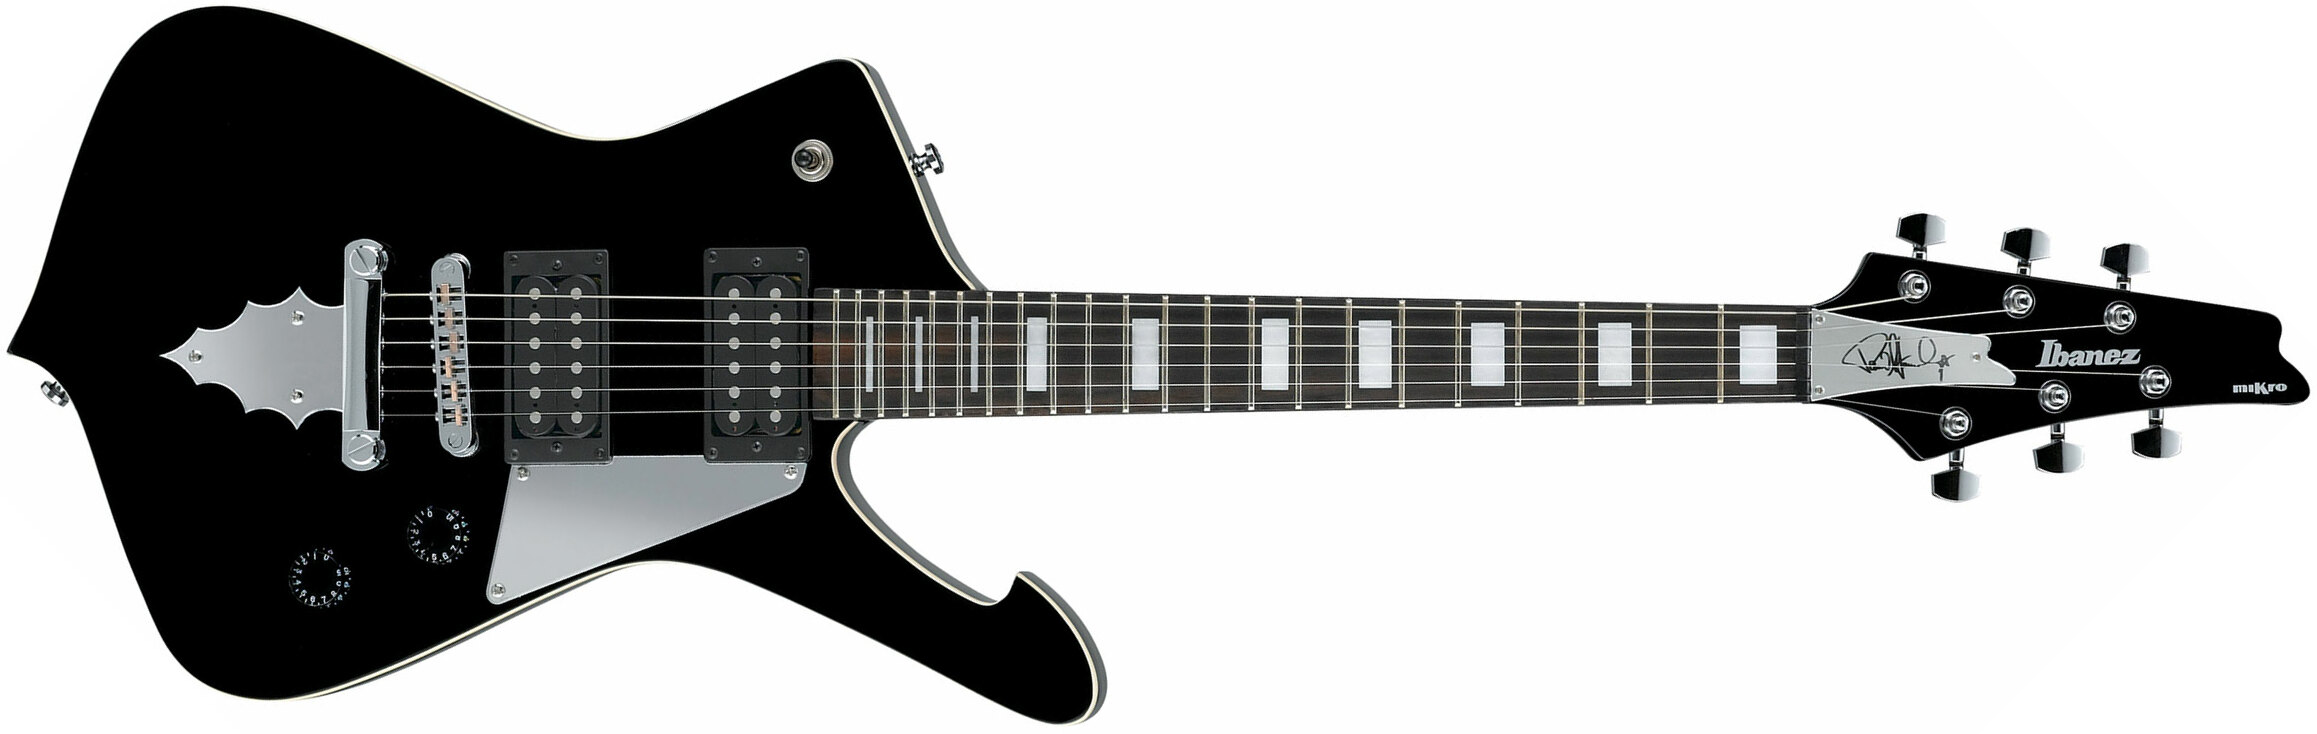 Ibanez Paul Stanley Psm10 Bk Signature Hh Ht Eb - Black - Elektrische gitaar voor kinderen - Main picture